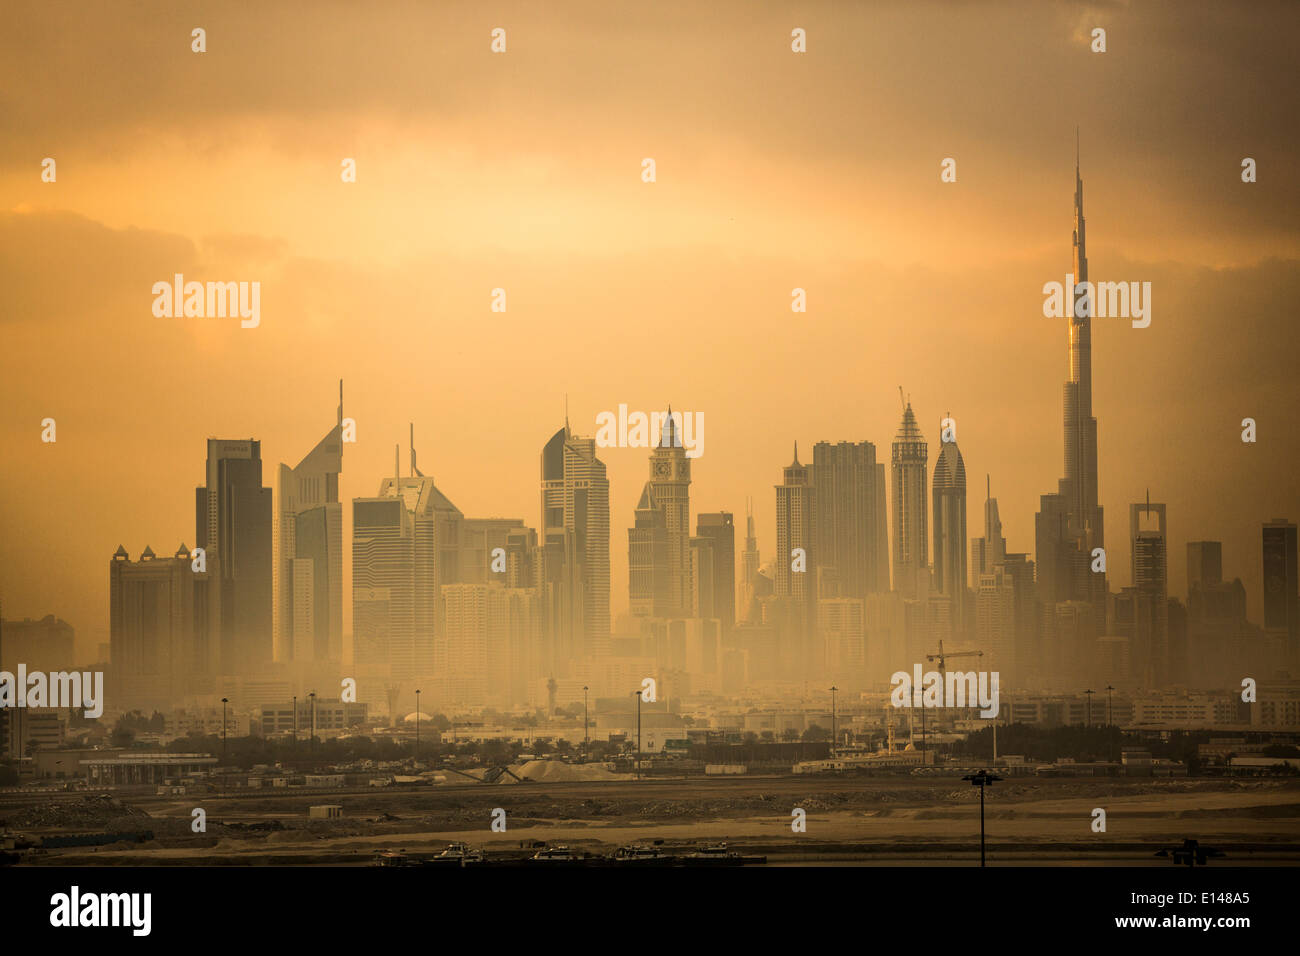 Vereinigte Arabische Emirate, Dubai, finanzielle Zentrum Skyline der Stadt mit Burj Khalifa, das höchste Gebäude der Welt. Sonnenuntergang Stockfoto